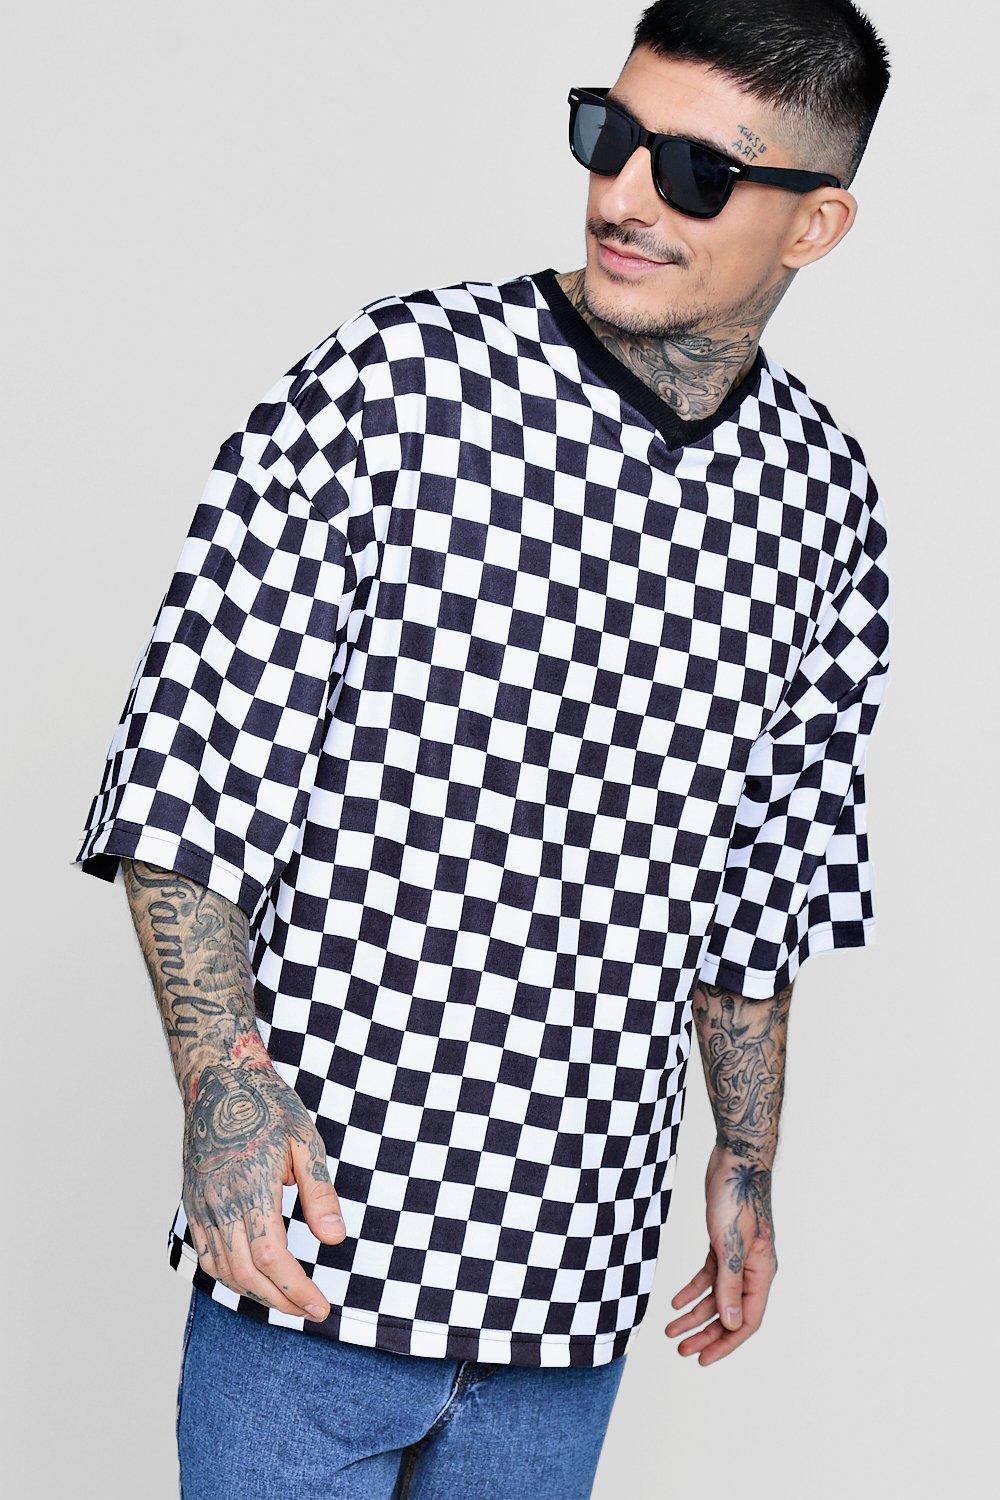 mens checkerboard shirt